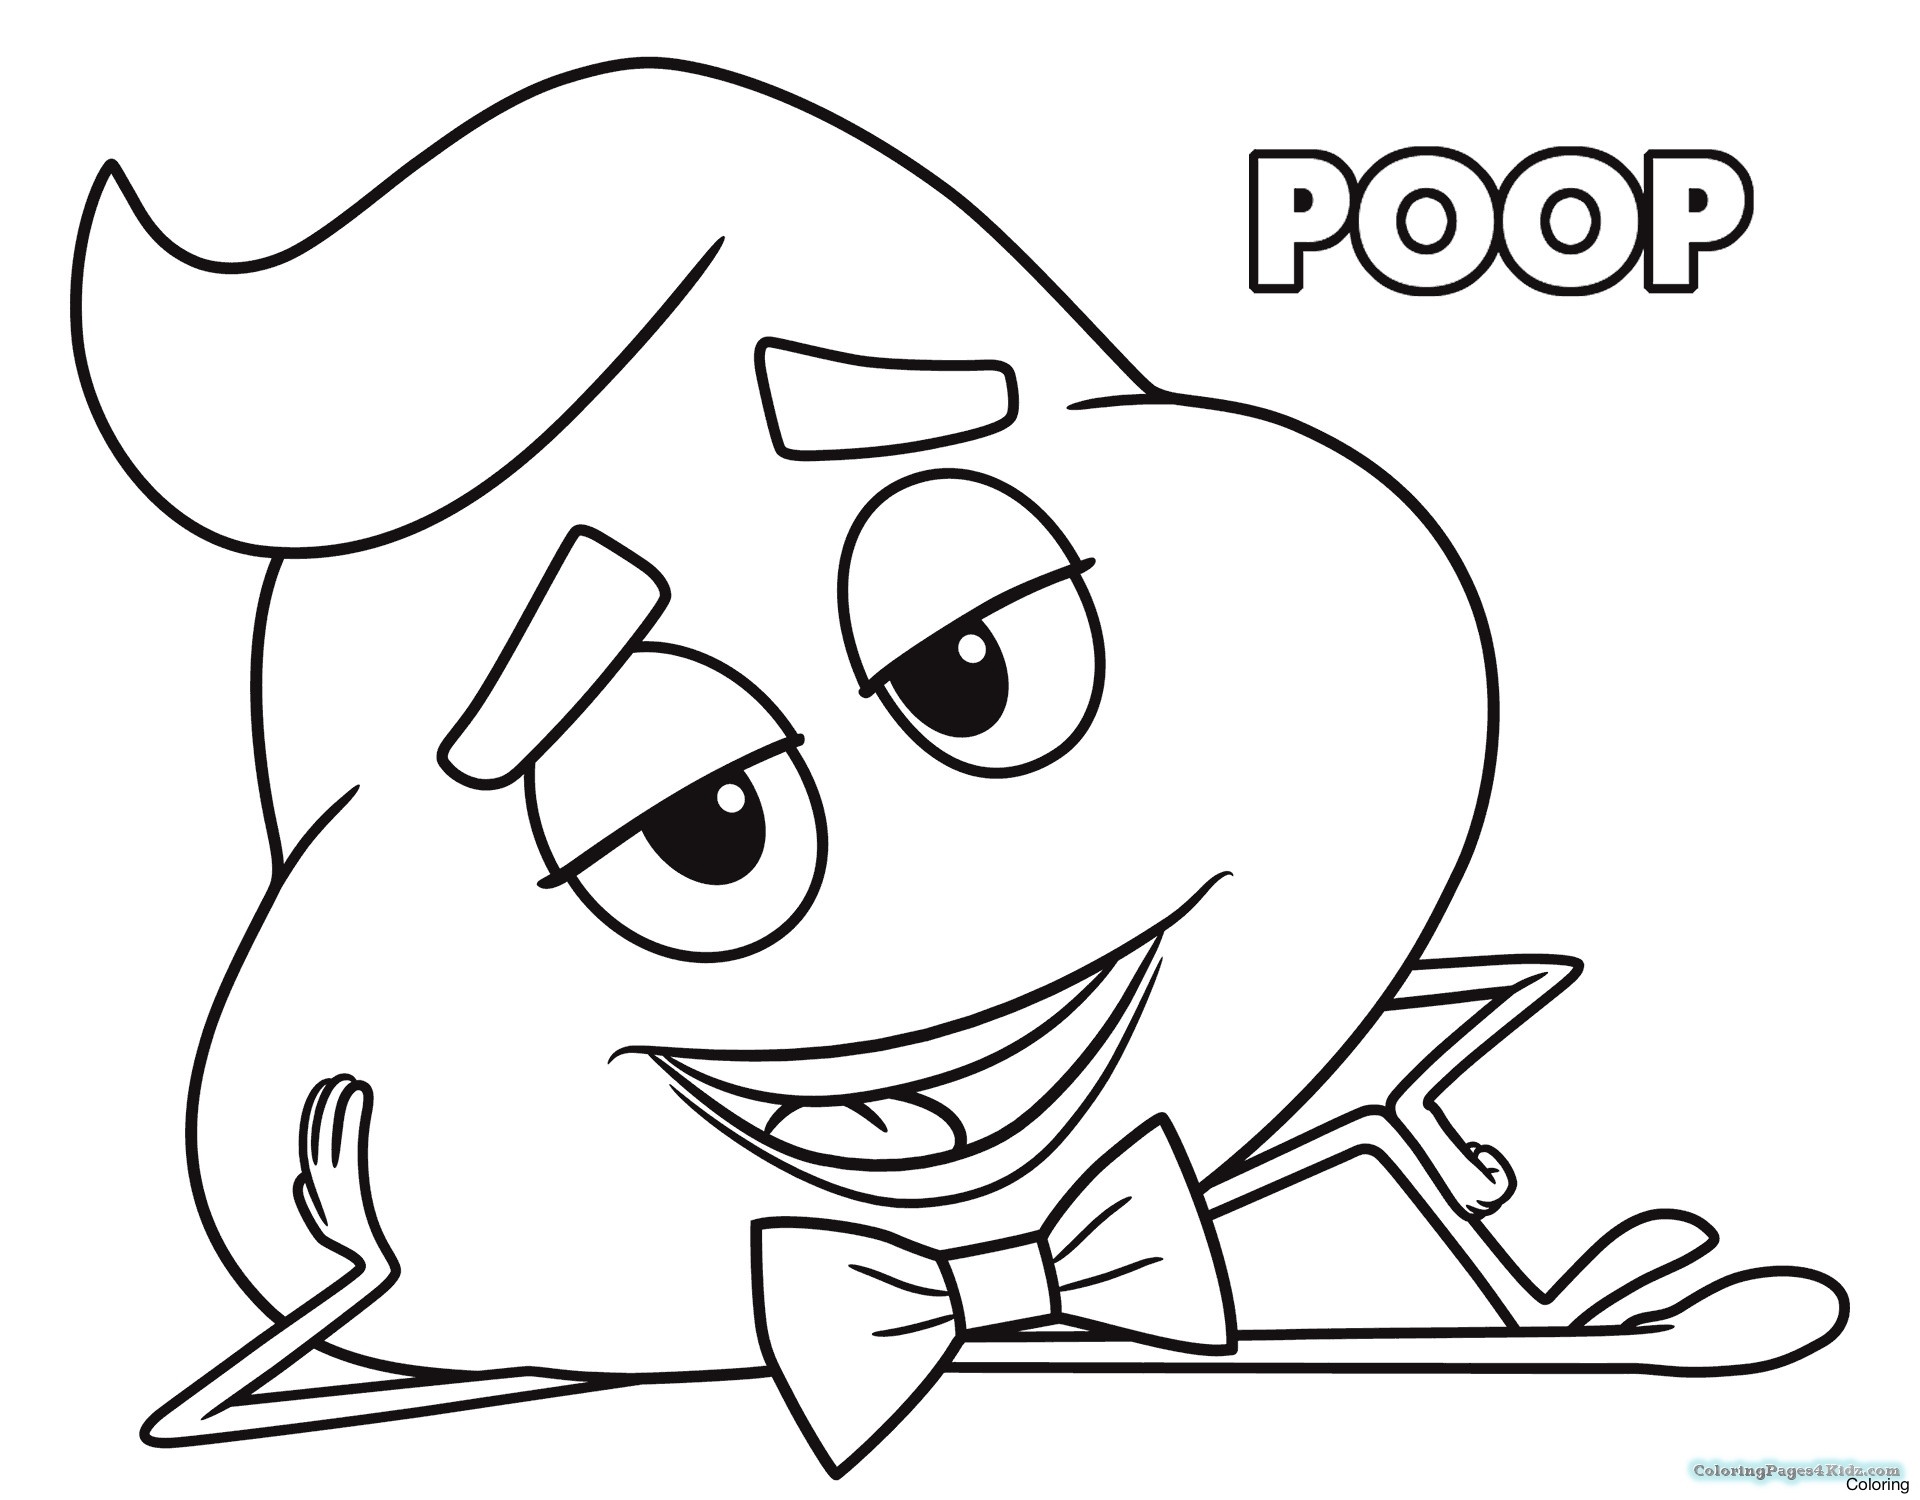 Poop Coloring Pages
 Emojis Coloring Pages Poop All Free Printable Free